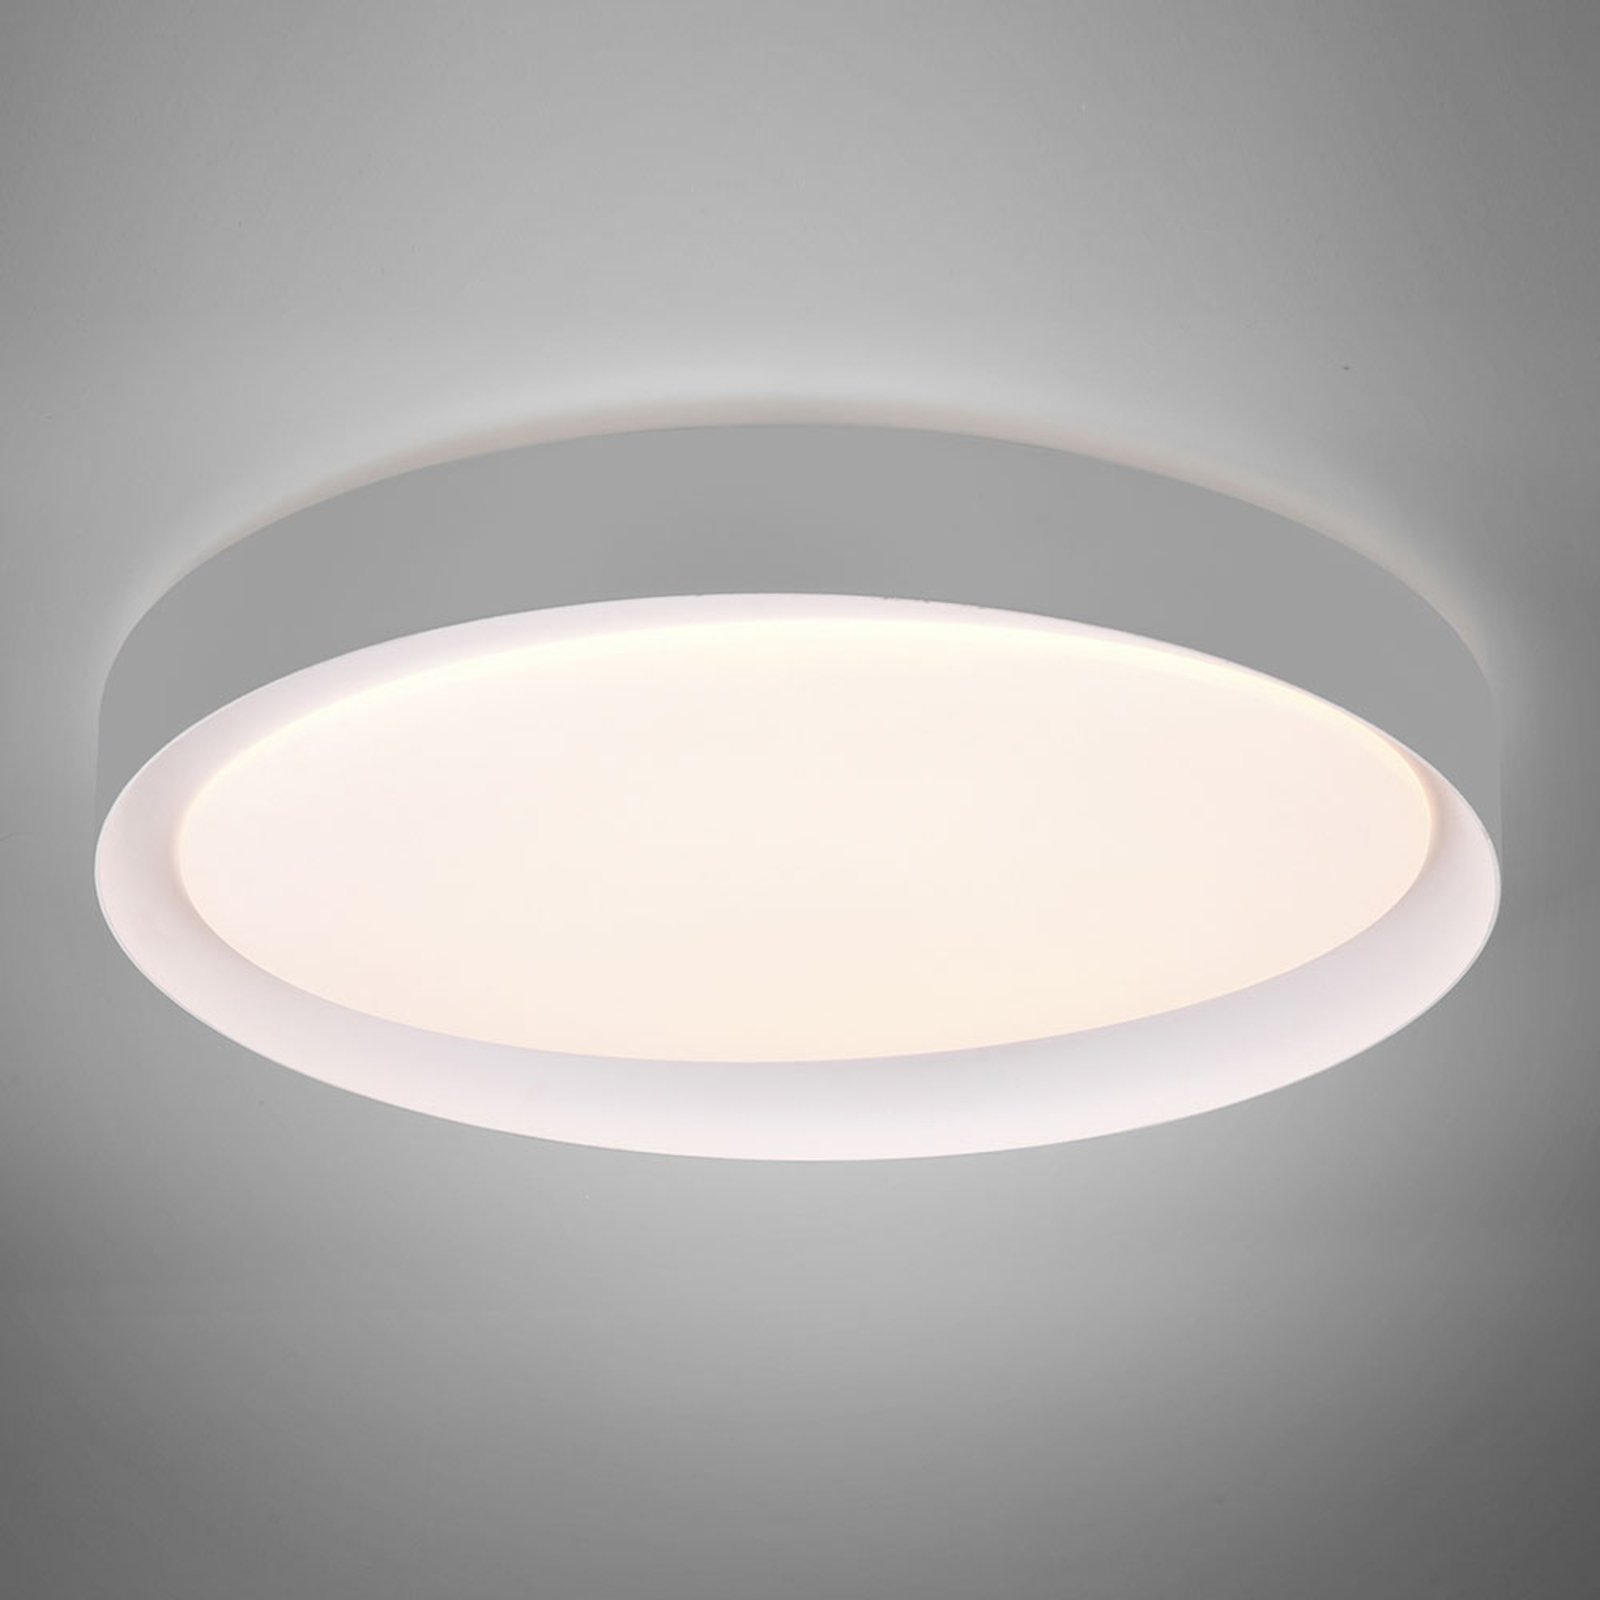 Plafón LED Zeta tunable white, gris/blanco